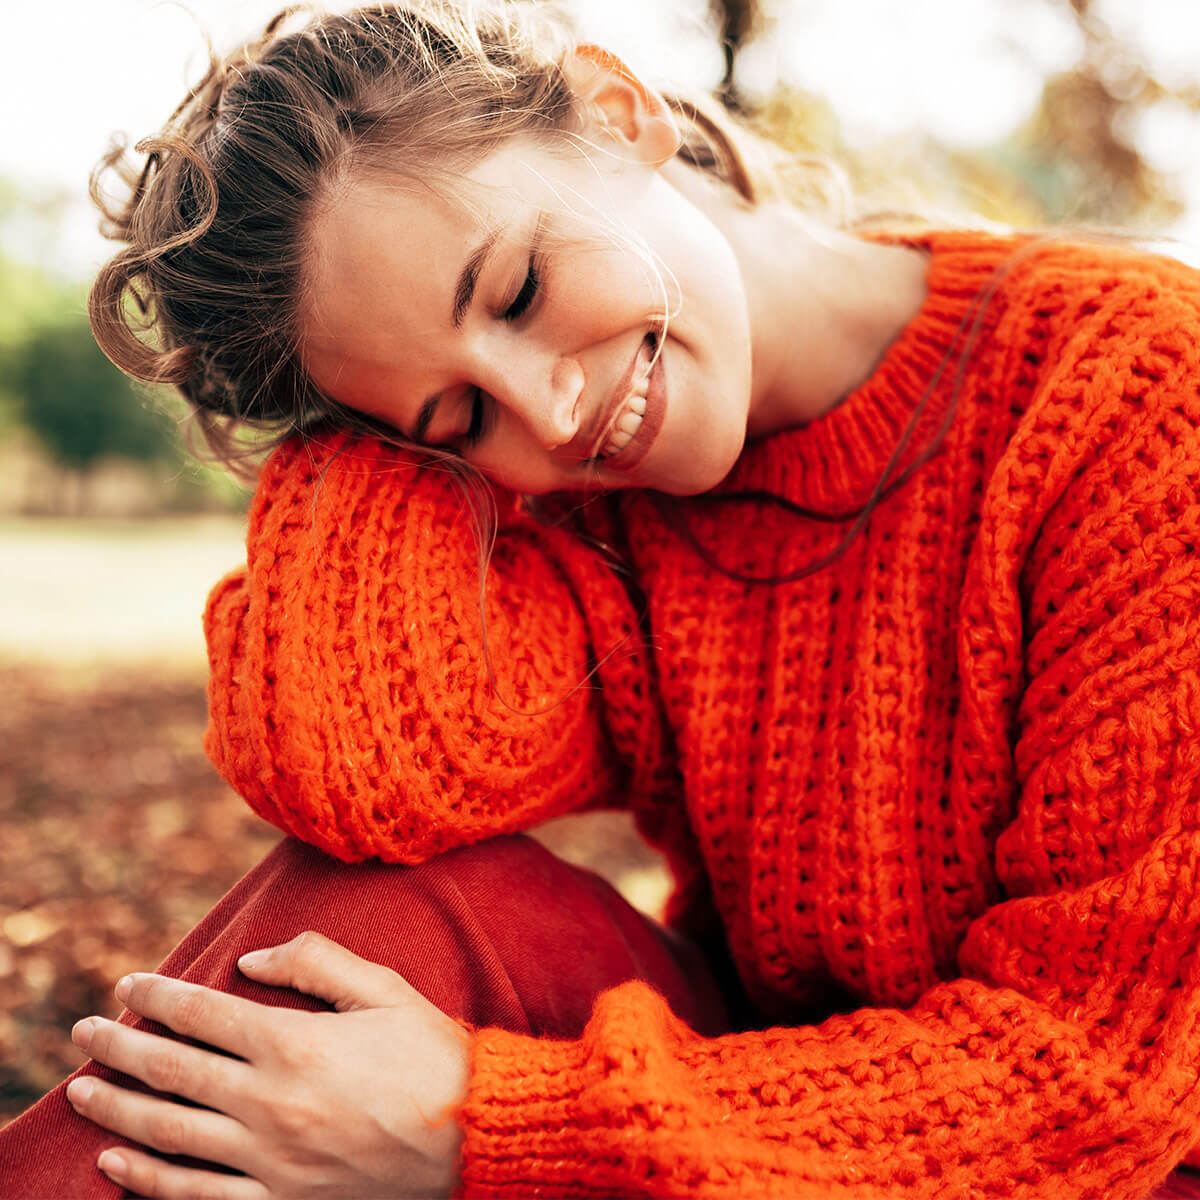 GRAPEFRUIT-KERN-EXTRAKT + Vitamin C 1200 BIO - 100 ml:  Lächelnde Frau sitzt auf einer Wiese